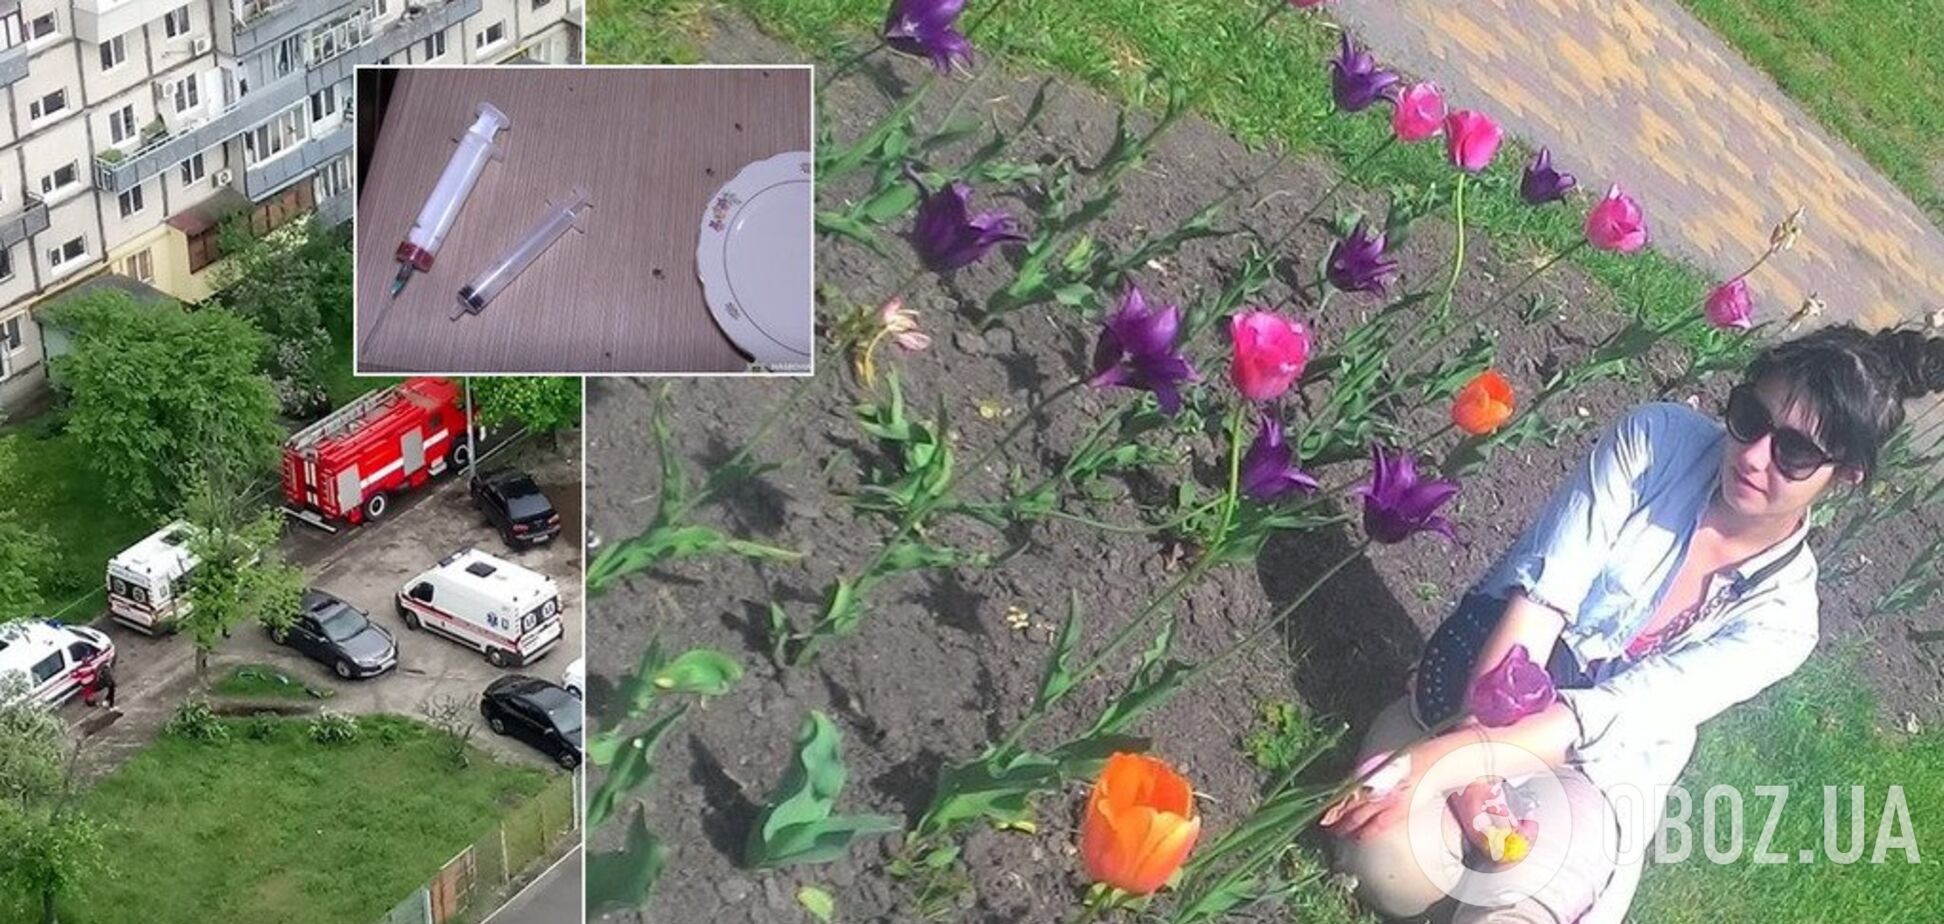 'Був скандал': чому змучену дитину знайшли у квартирі з трупами в Києві